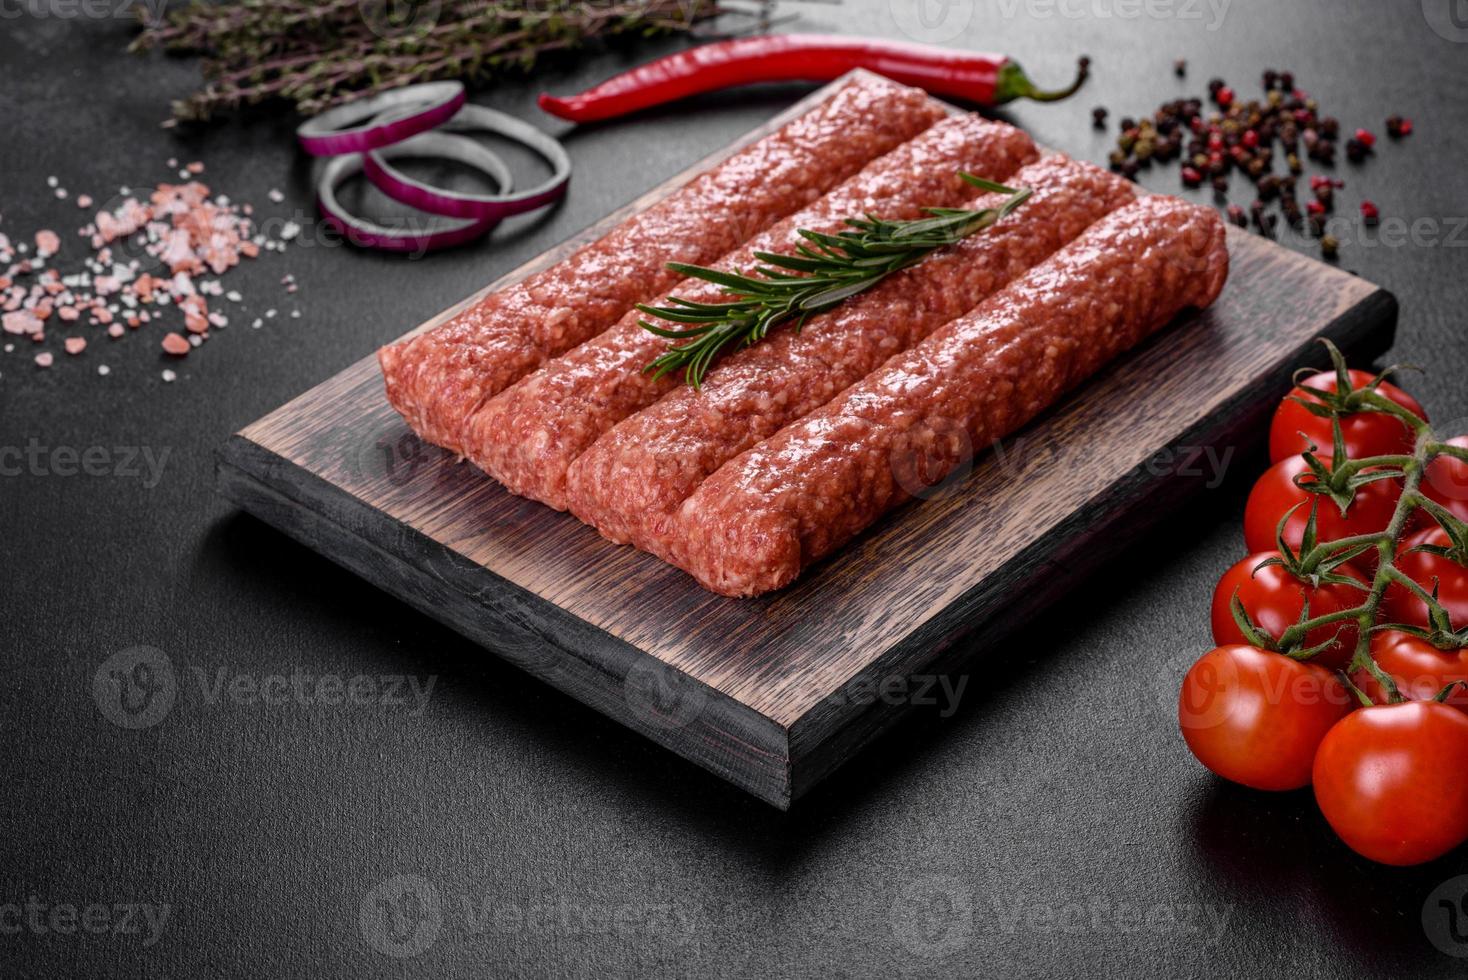 macinato fresco crudo per kebab alla griglia con spezie ed erbe aromatiche foto